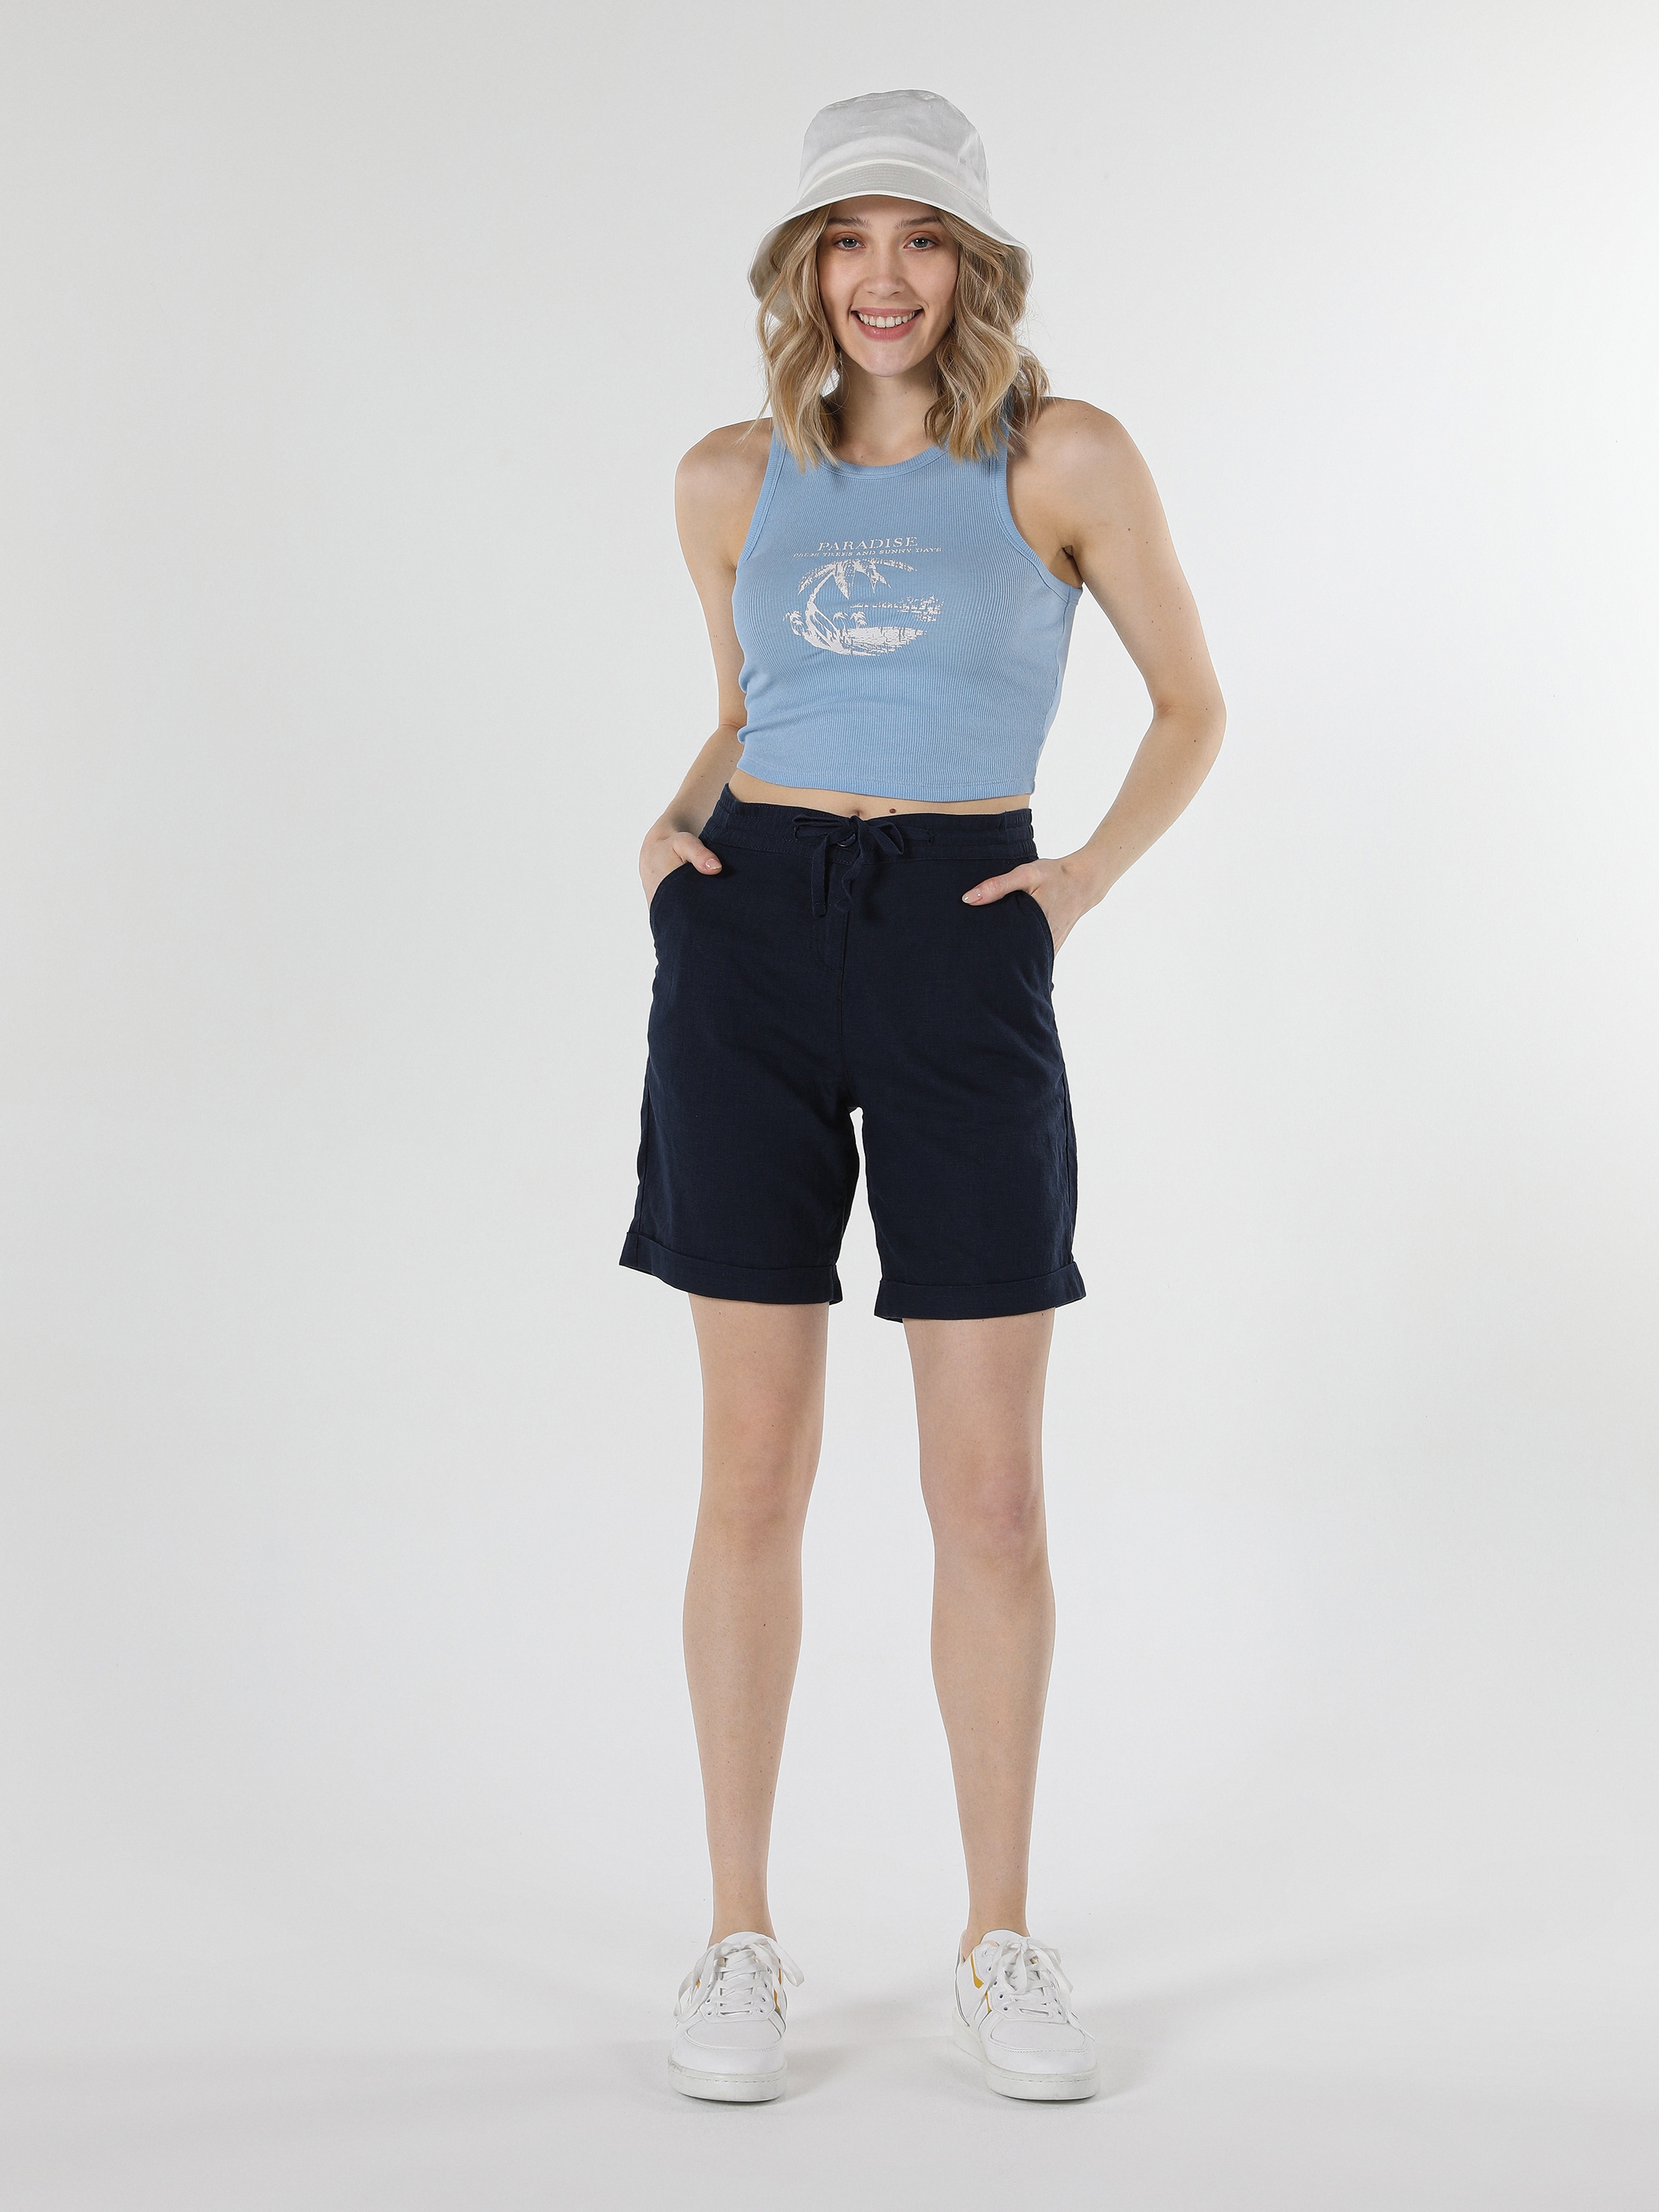 Afficher les détails de Short Femme Bleu Marine Taille Haute Coupe Regular